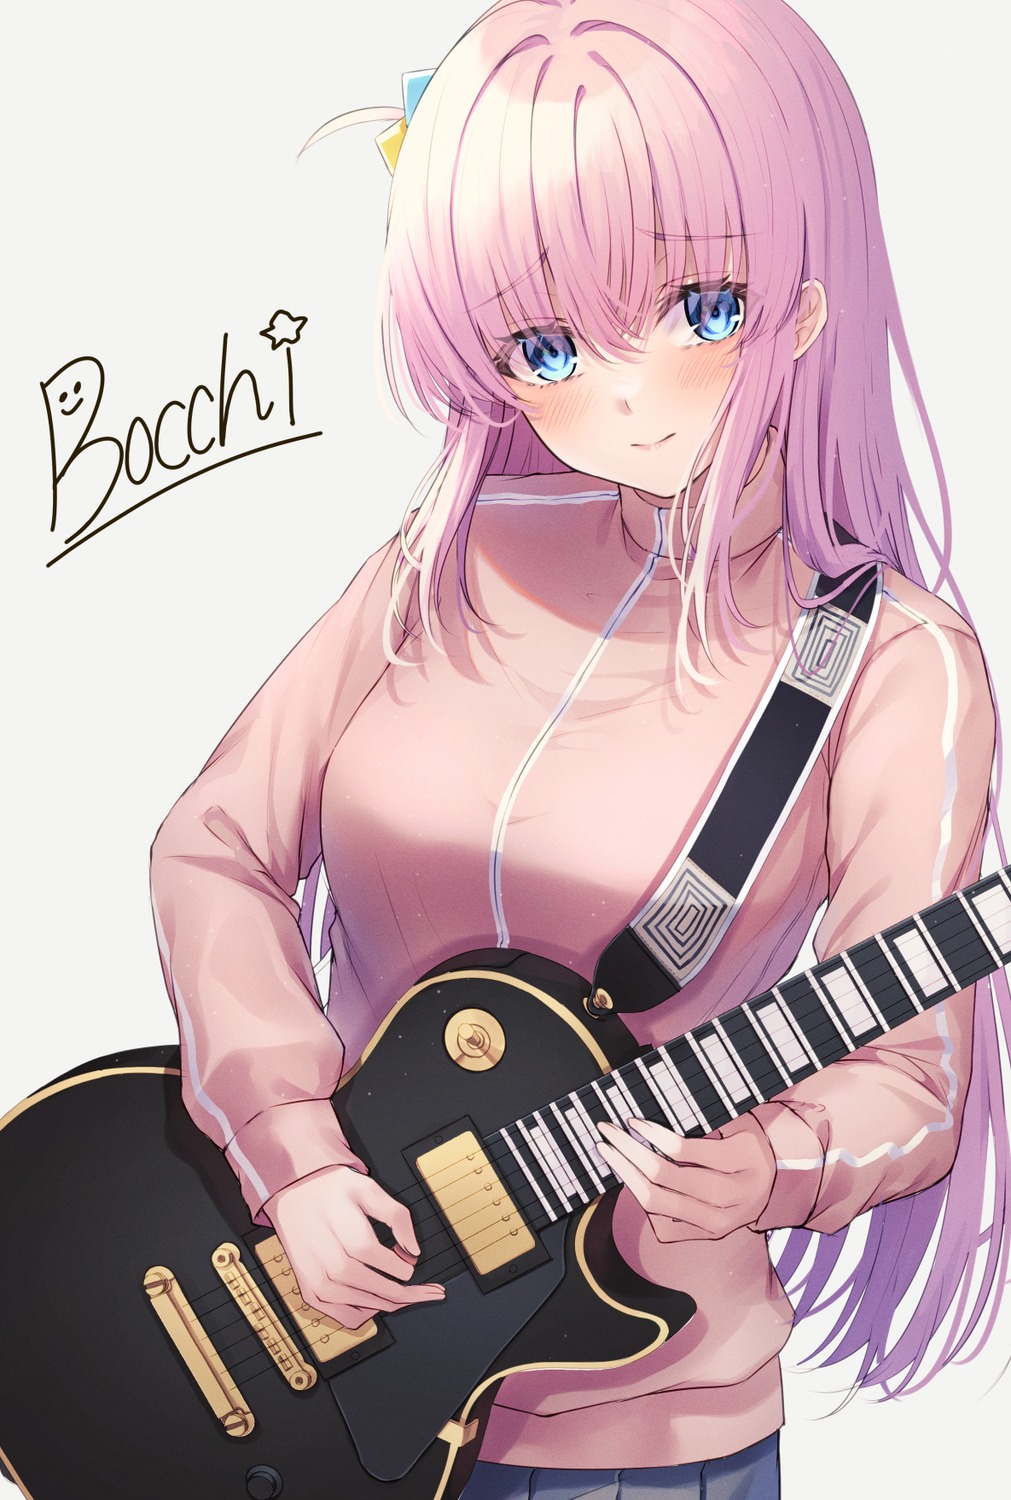 bocchi_the_rock! gotou_hitori guitar gym_uniform primamiya seifuku